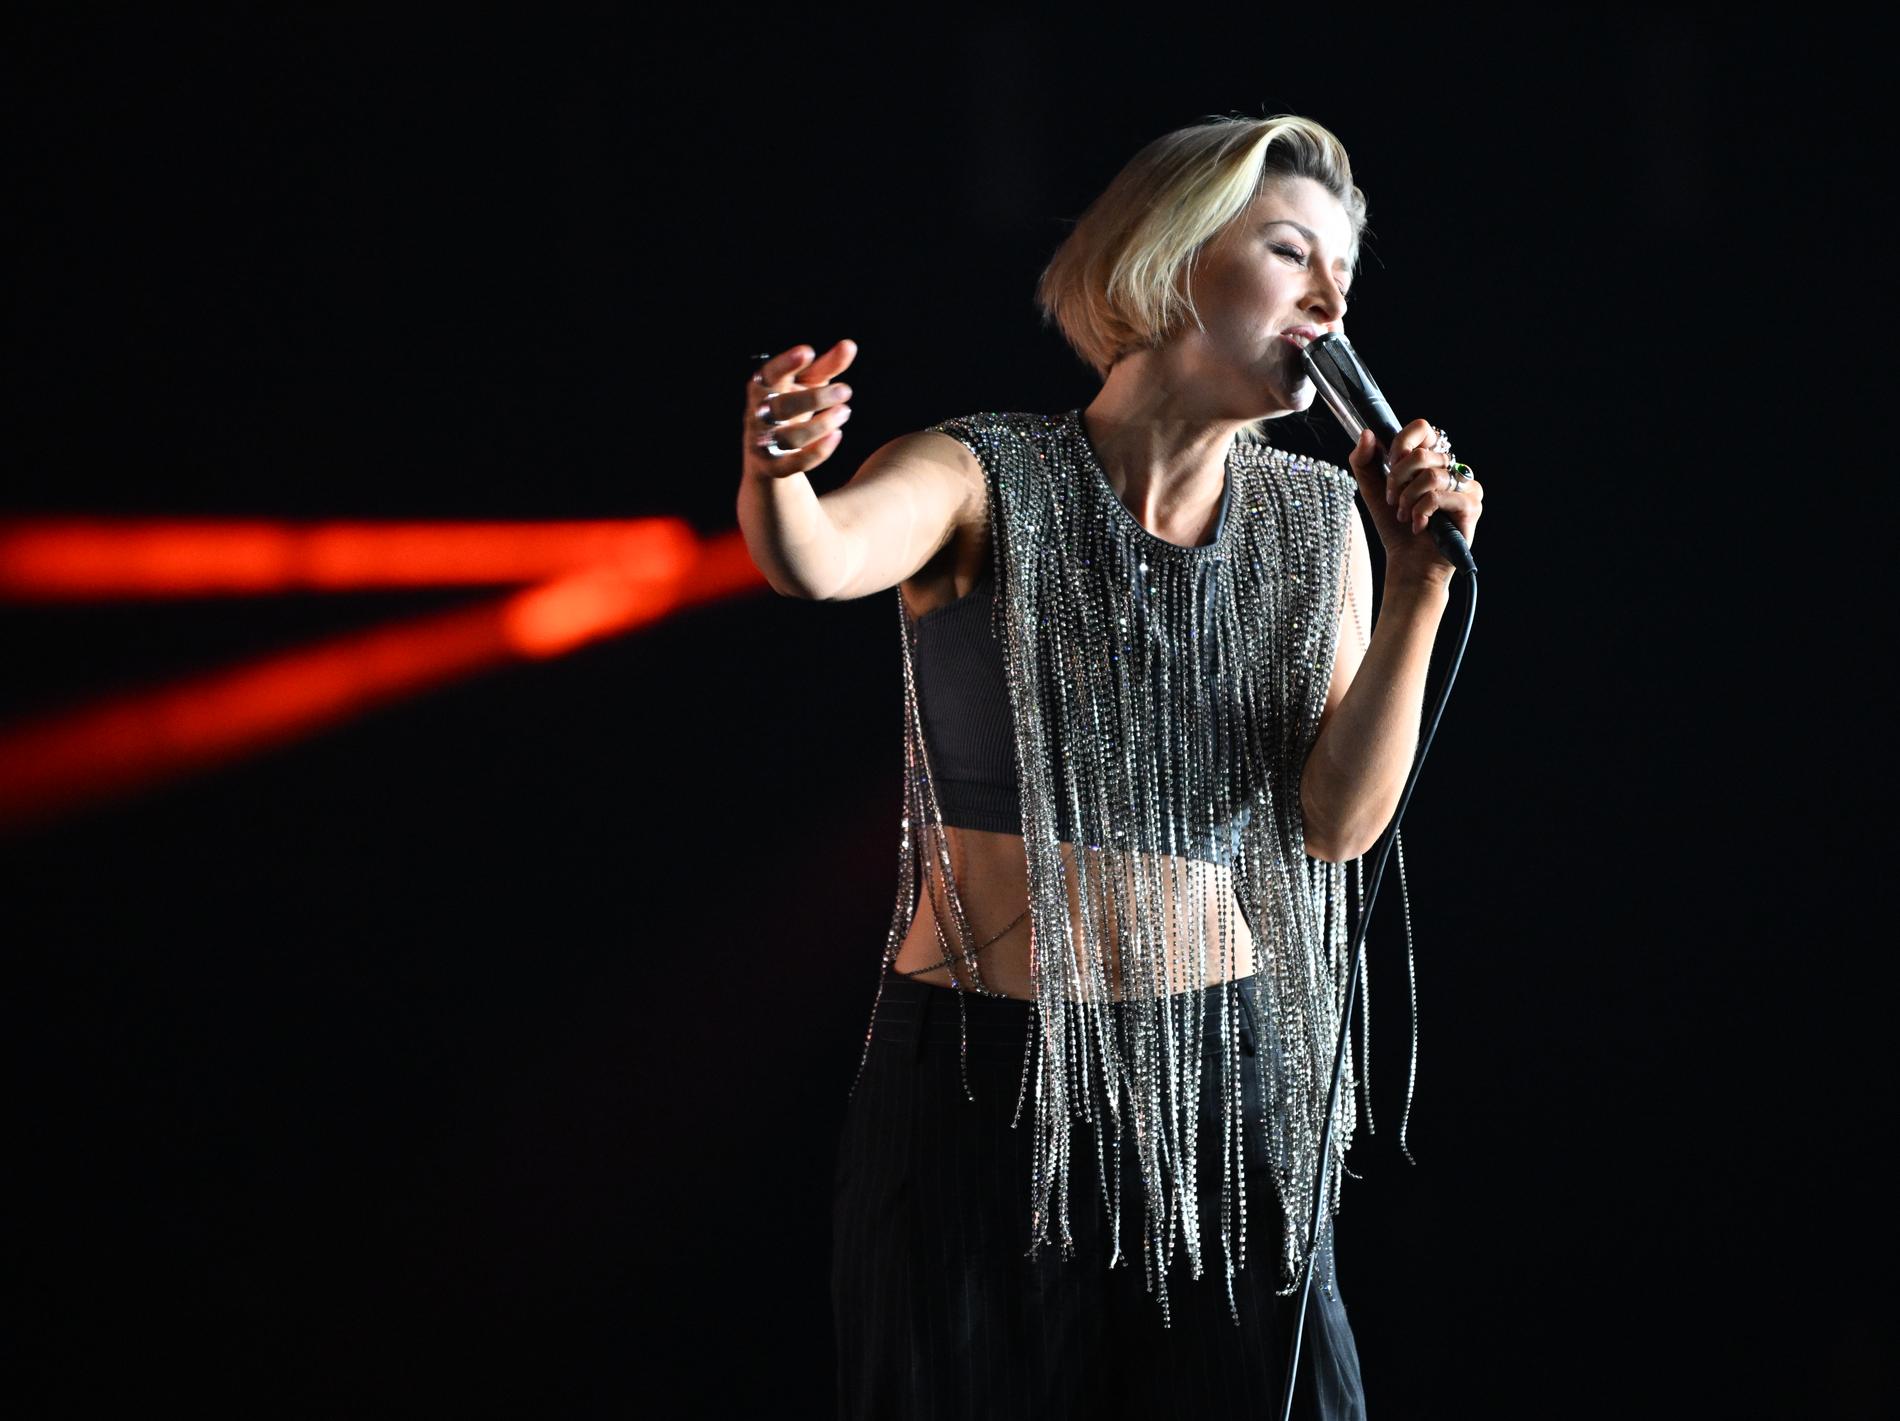 Cornelia Jakobs fick flest röster i första delfinalen av Melodifestivalen. Arkivbild.